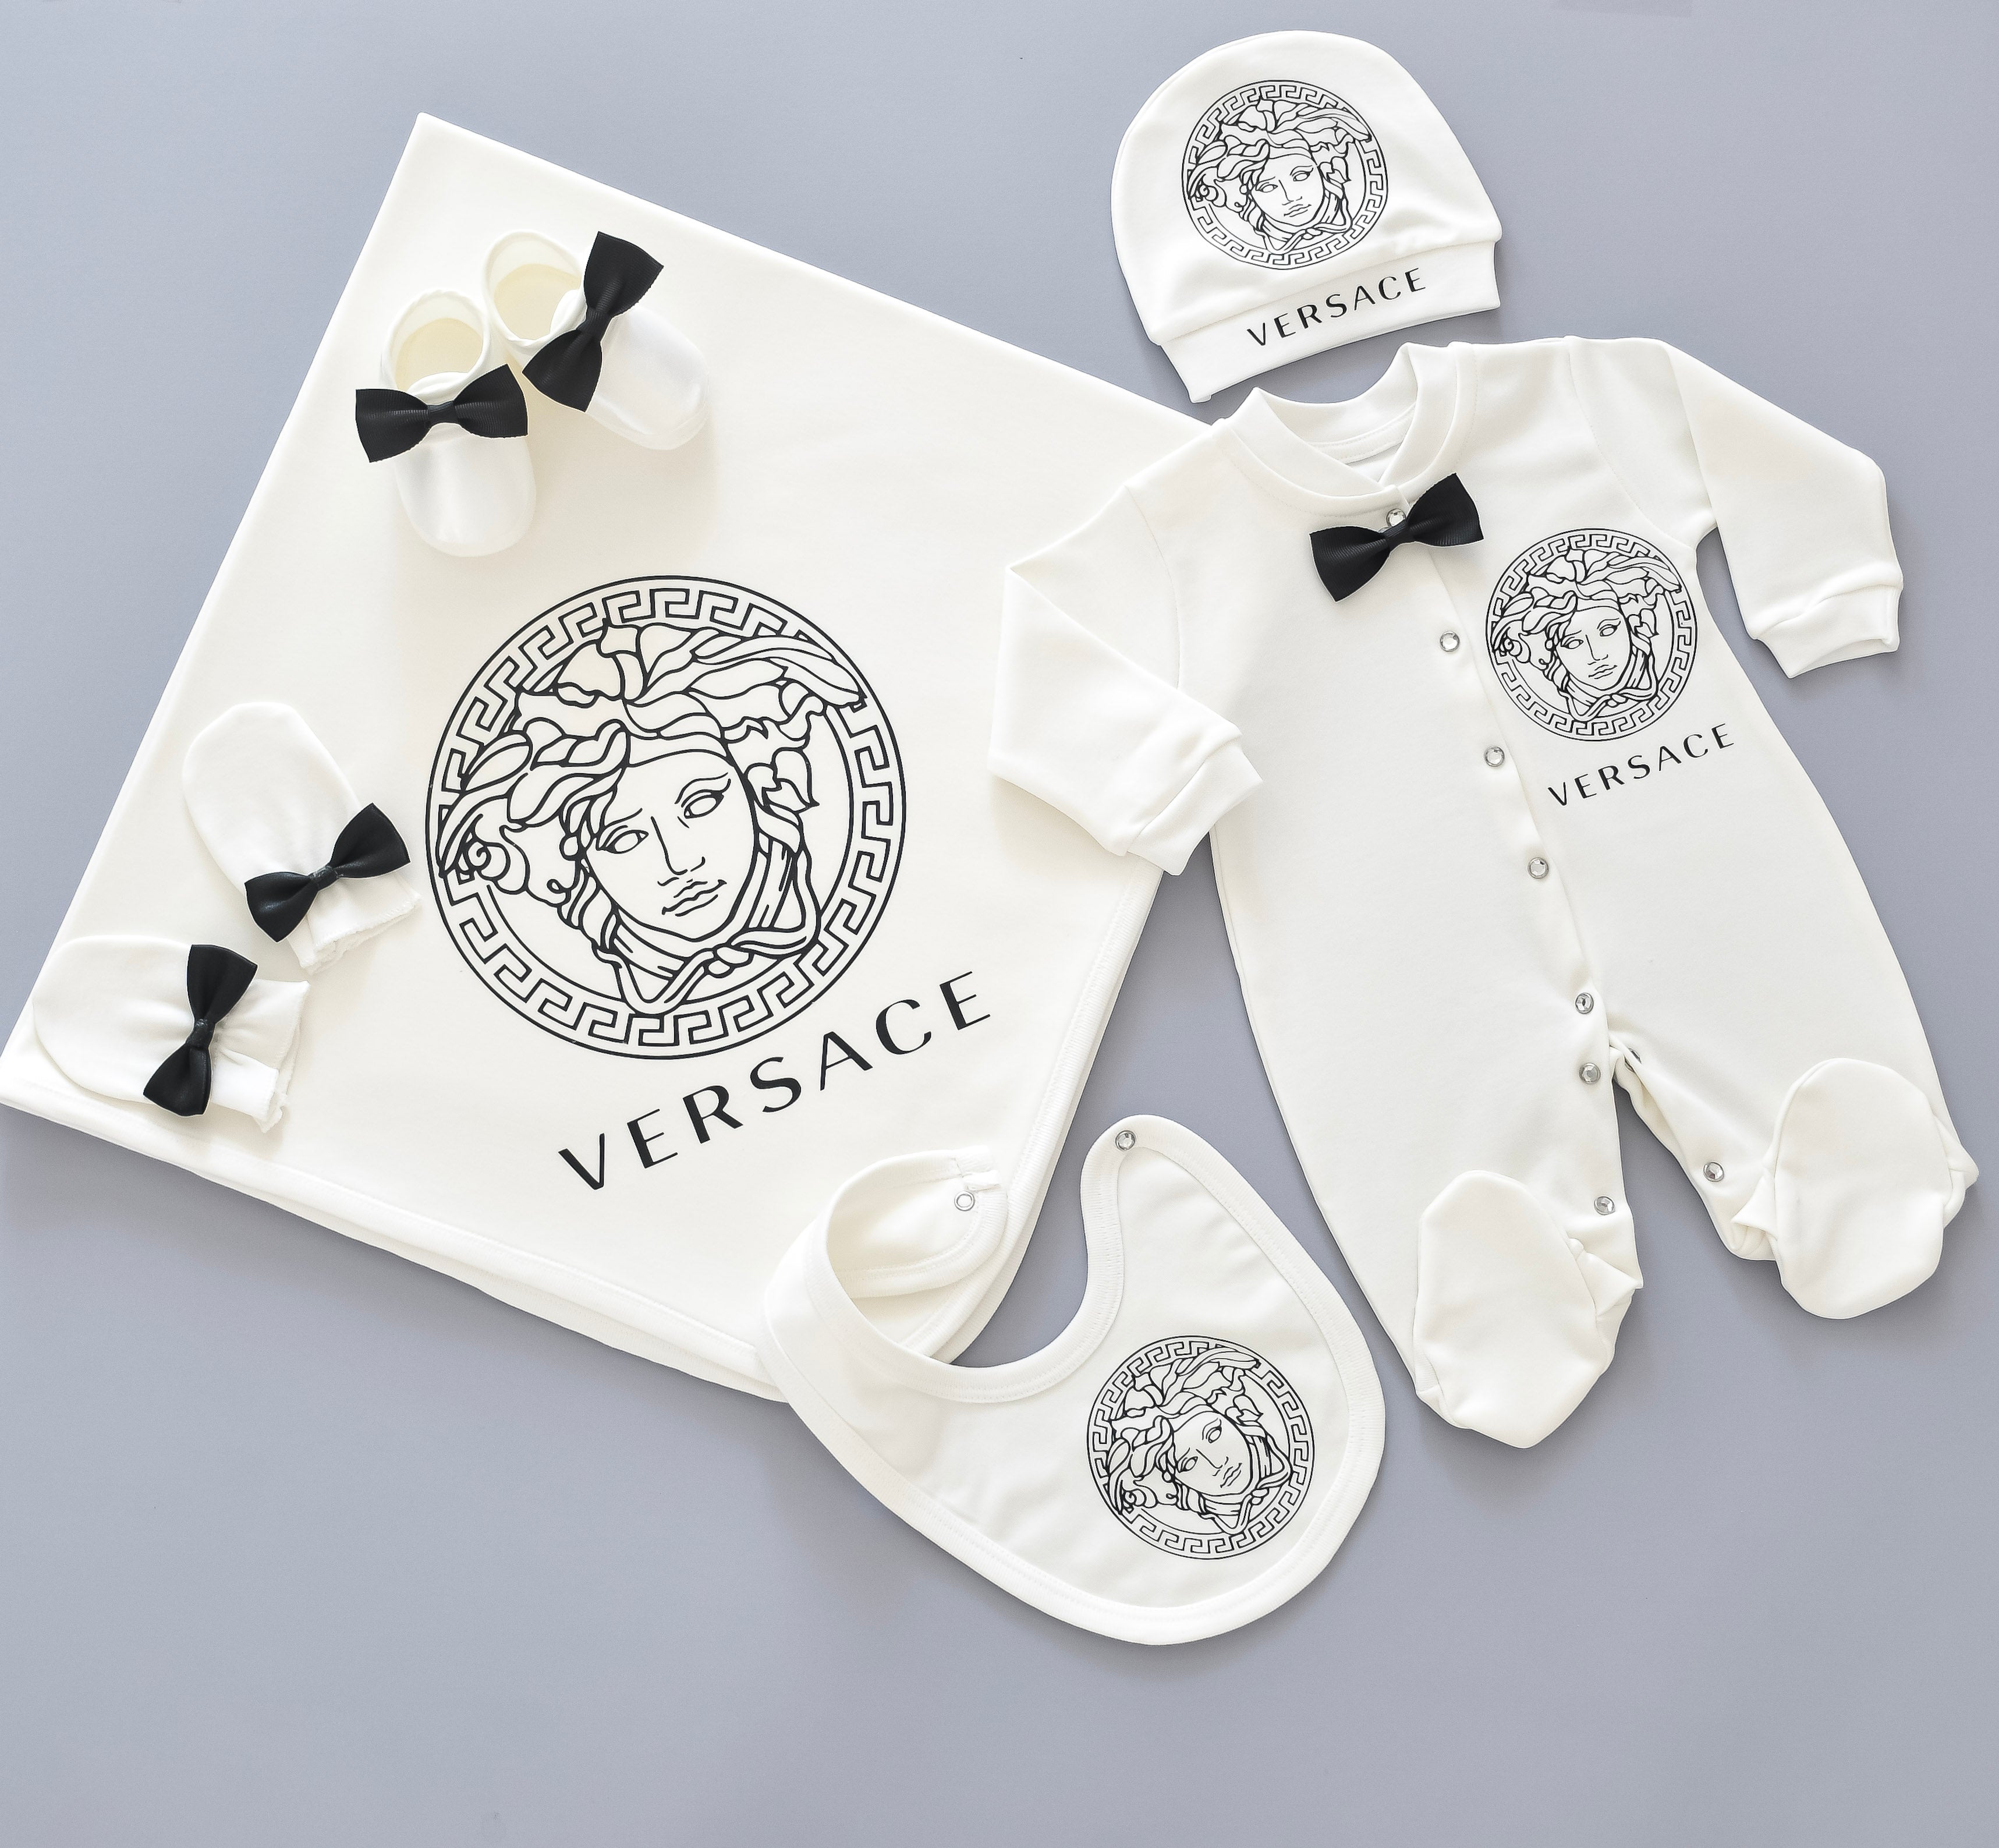 Versace Inspired Newborn Baby Set - 6 Pieces Set – Tianoor